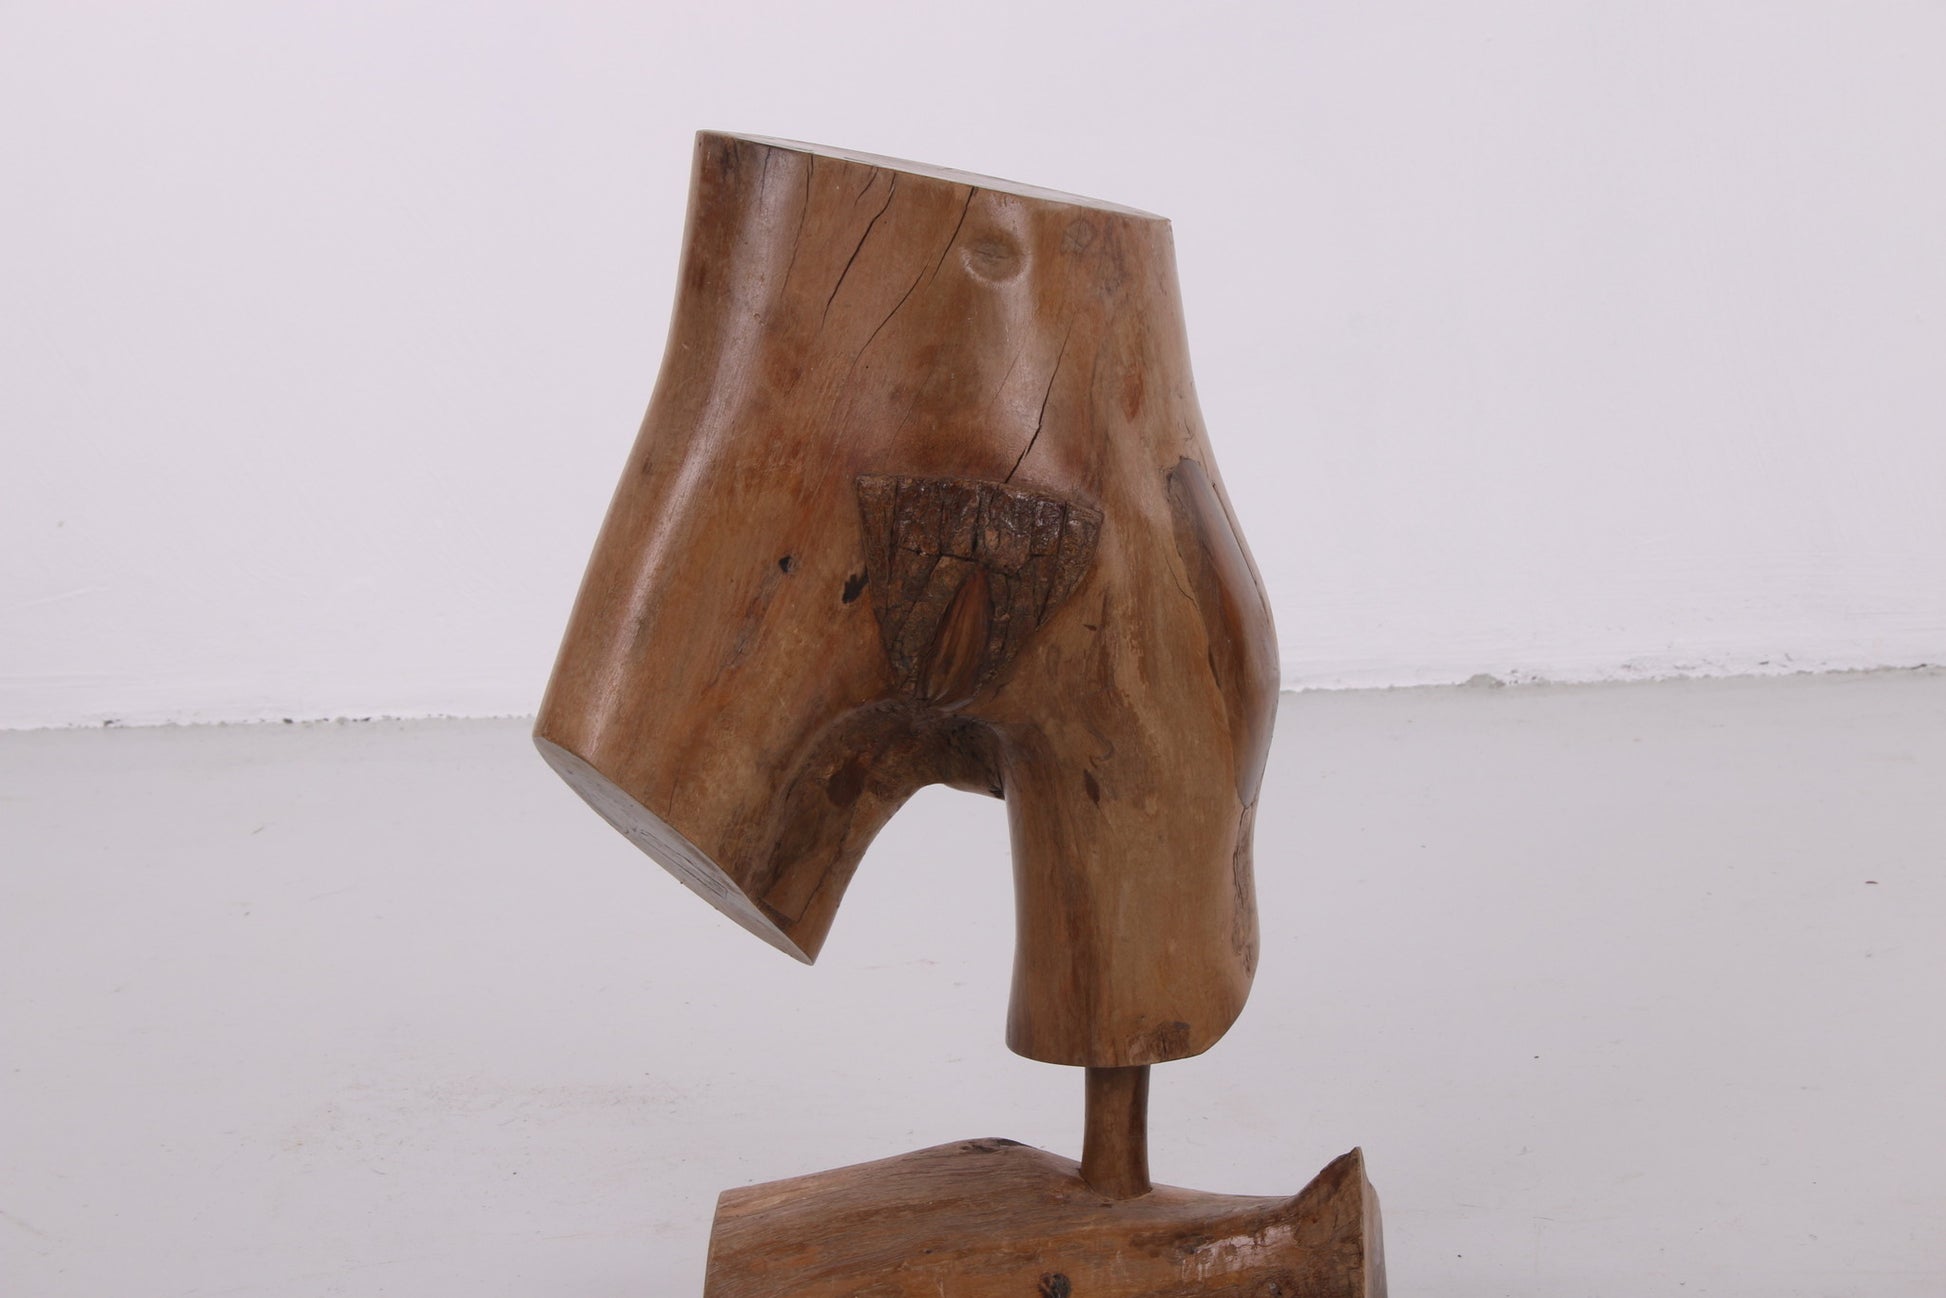 Naakt skulpture van vrouw gemaakt uit hout